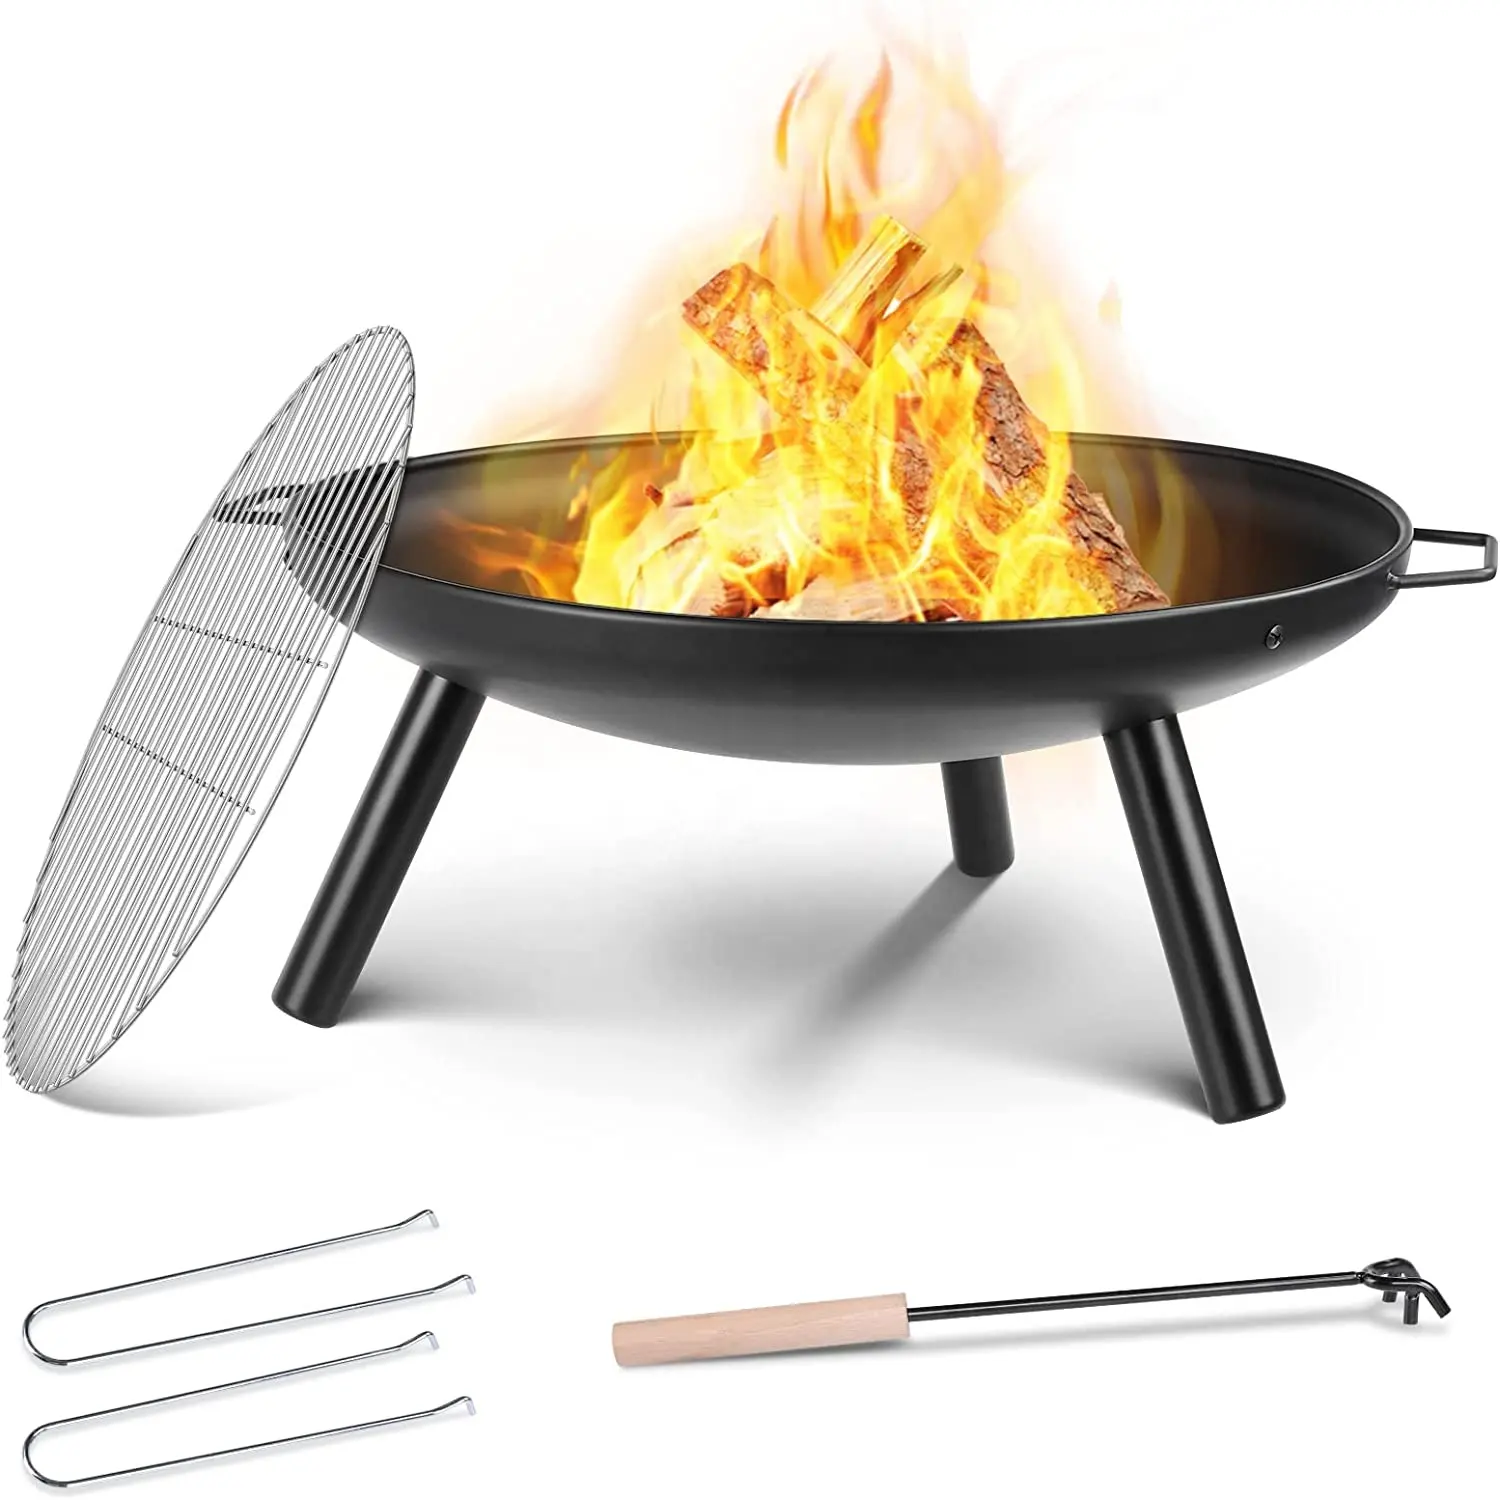 Yeni tasarım 24 inç 60cm açık kamp ateş çukuru bahçe kase şekline mangal pişirme ızgarası ile